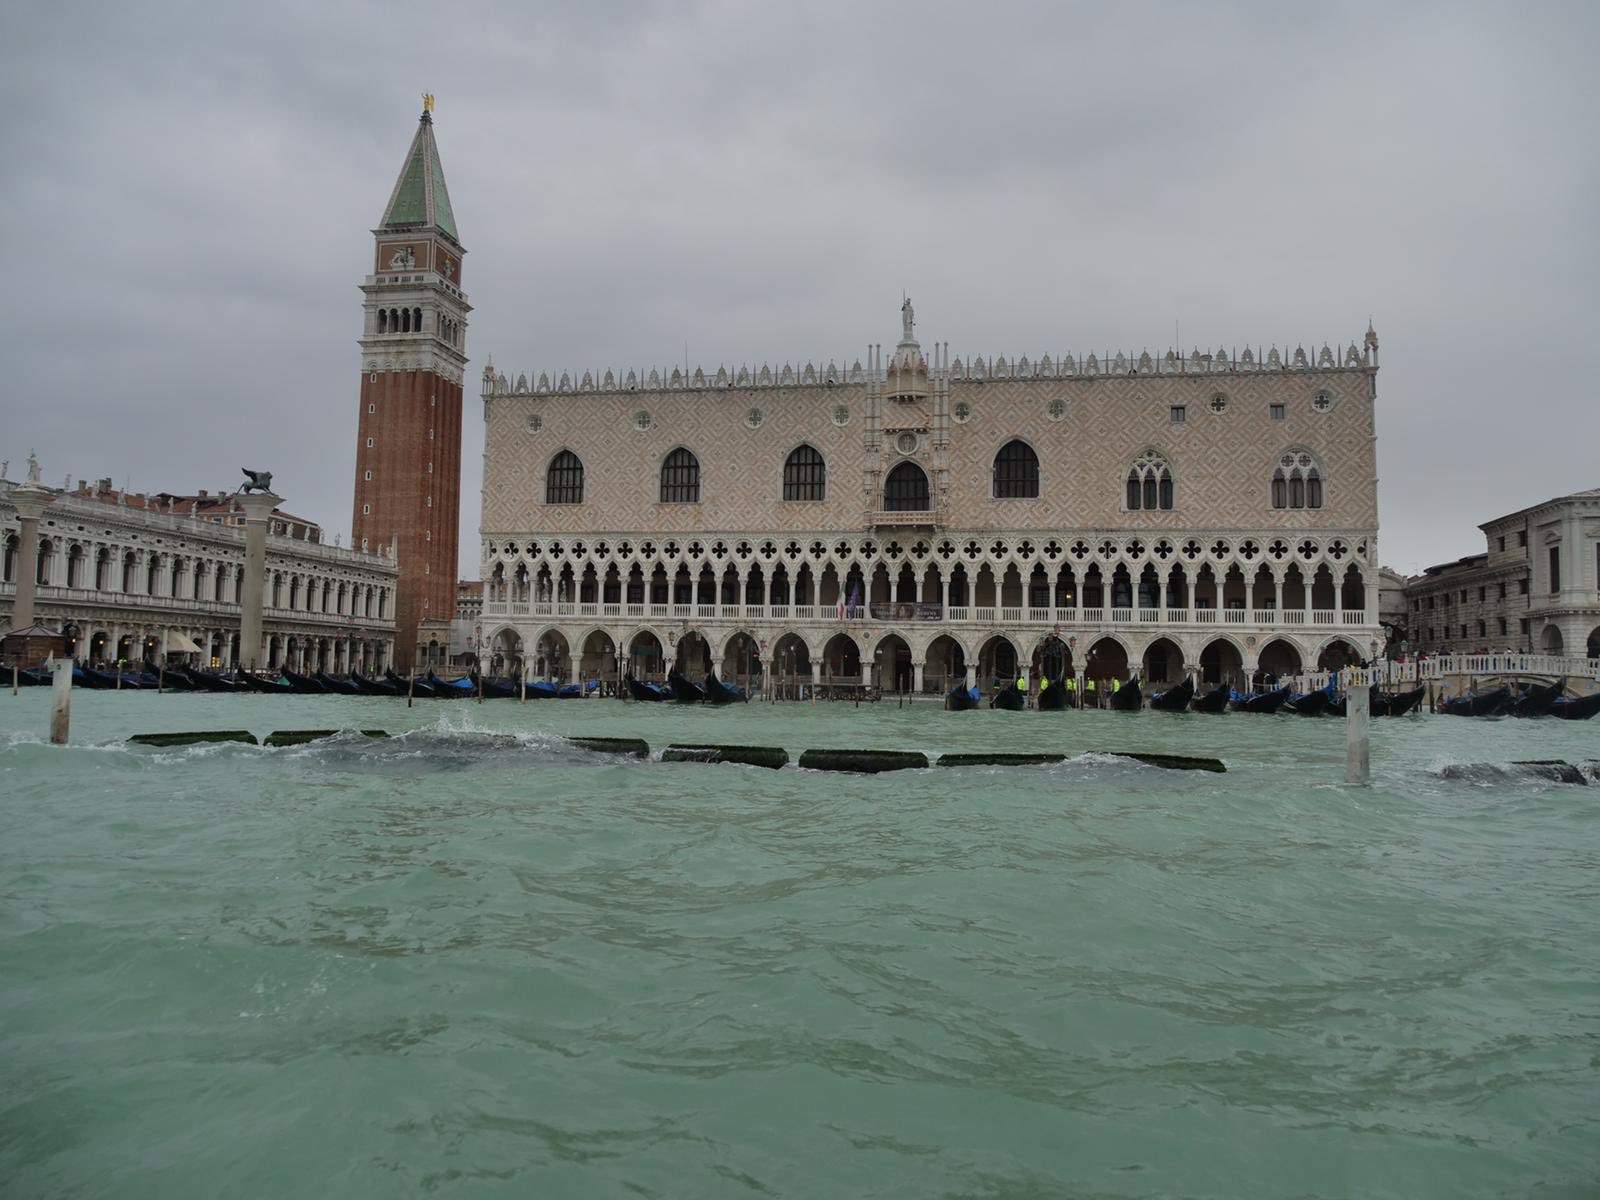 Venise, nouvelle montée des eaux aujourd'hui, 154 cm touchés, San Marco fermé. La municipalité ouvre un compte pour l'aide